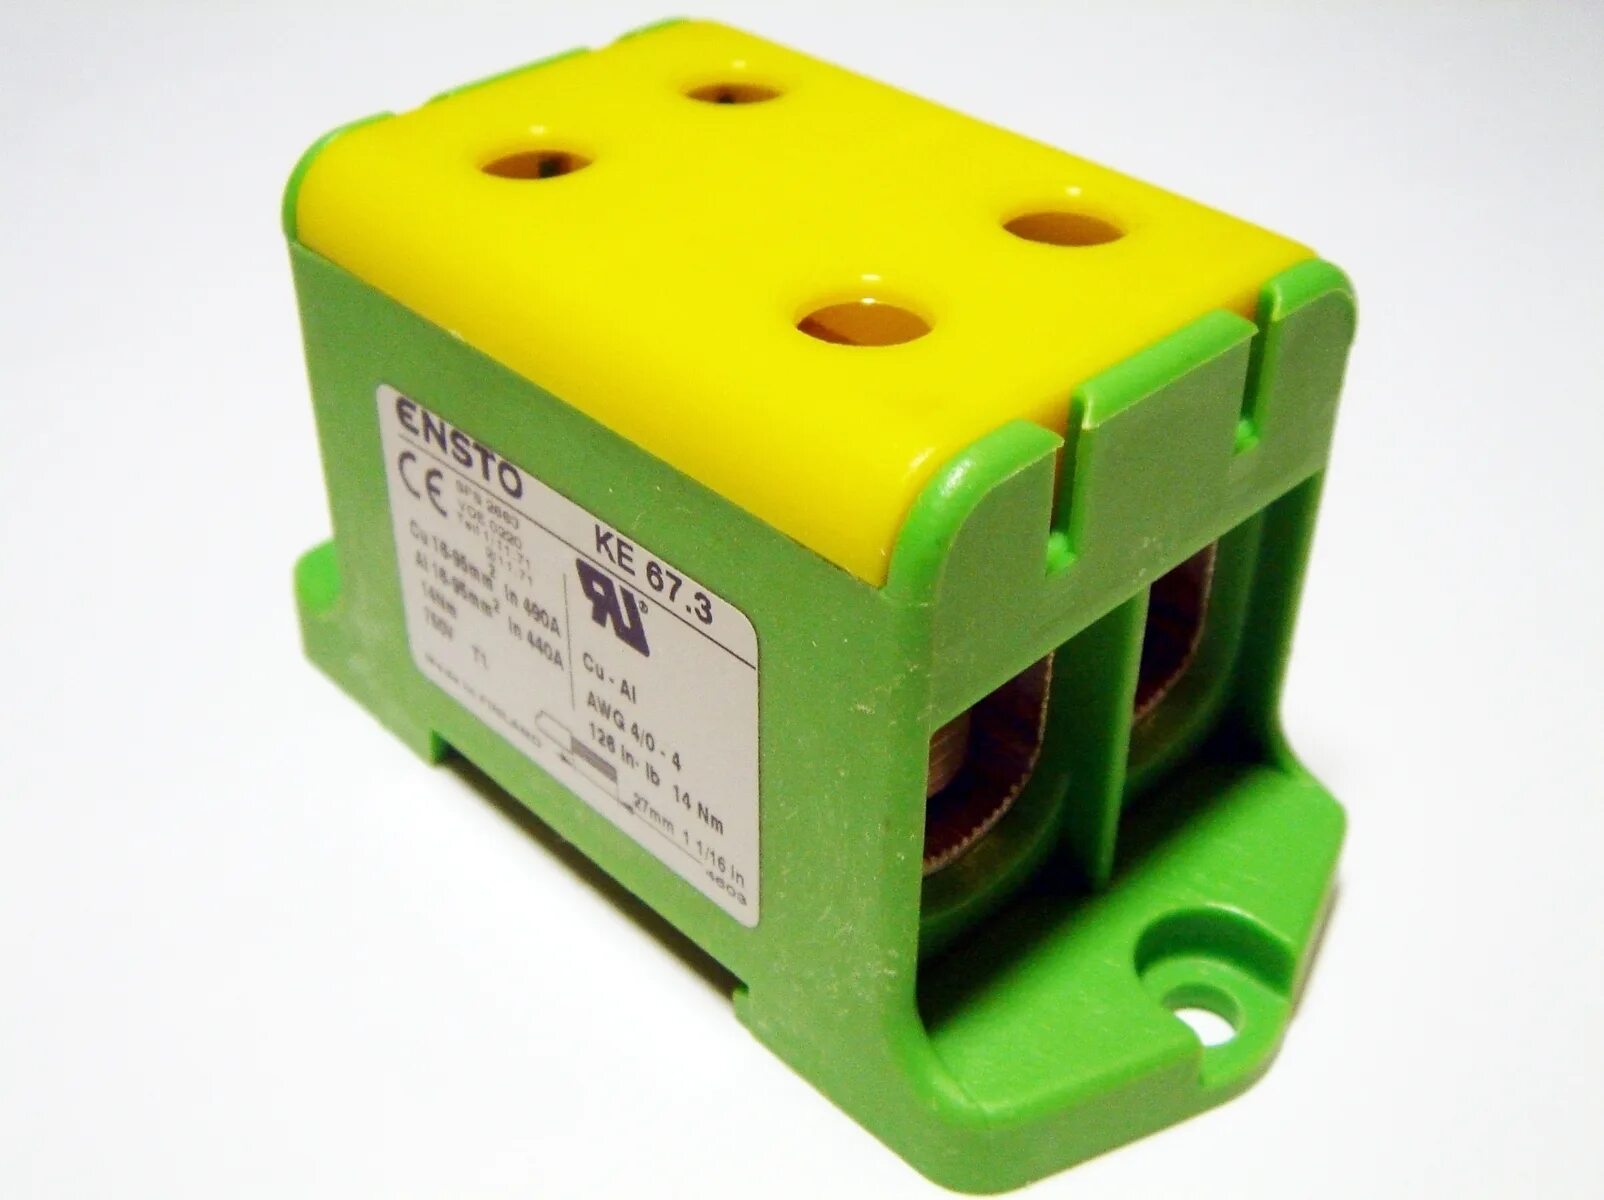 Блок клеммный распределительный желто-зеленый (ke67.3r). Клемма КВС 95мм2 4х полюсная. Клеммник на 95 мм2. Ke 67.3 Ensto.